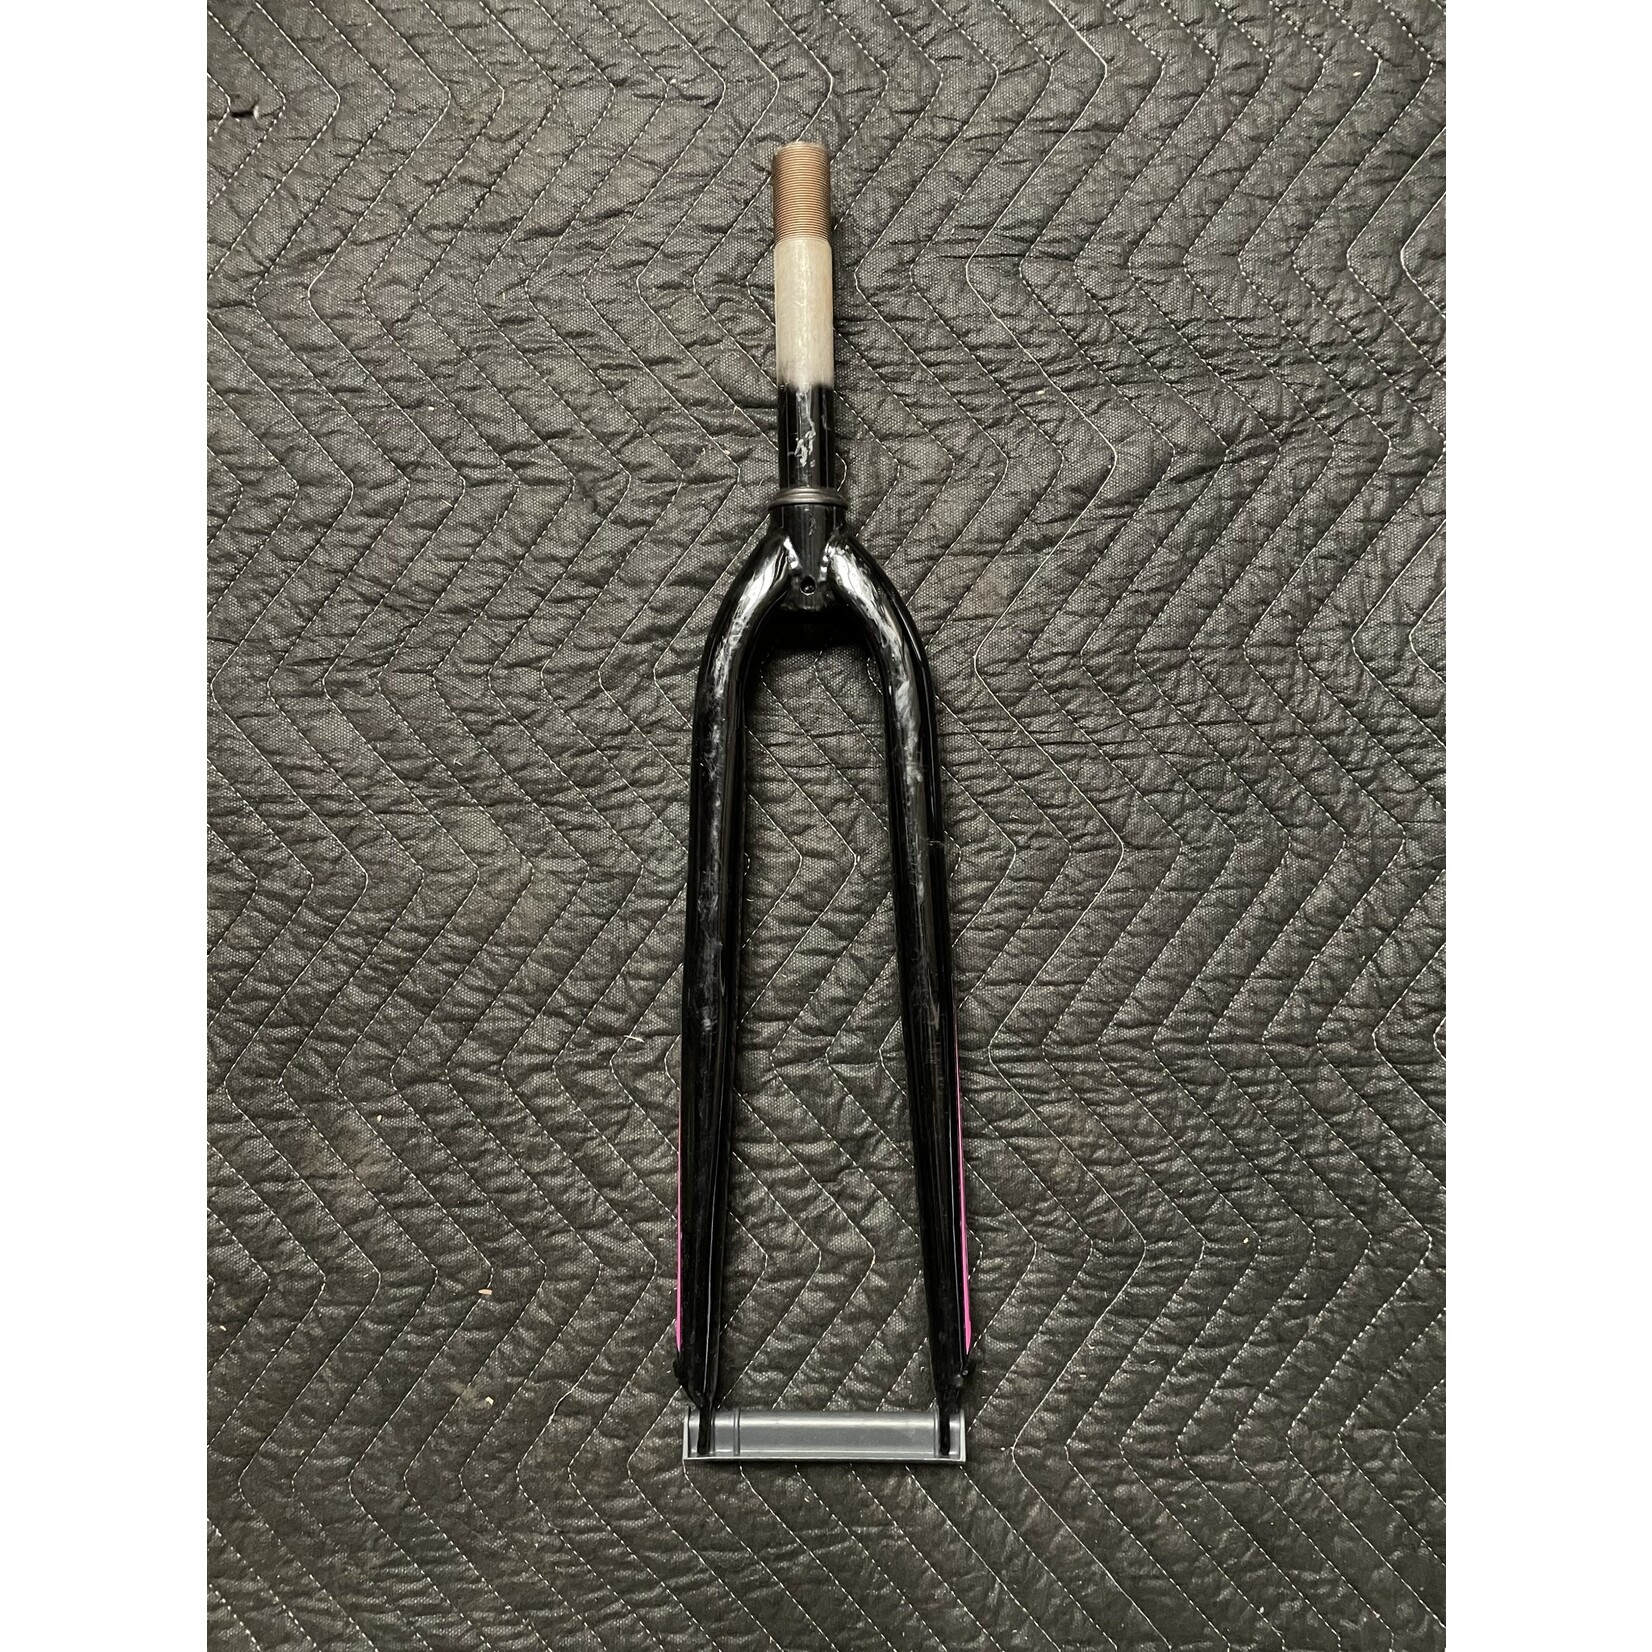 GMC 700C Threaded Bicycle Fork 5 5/8” Steer Tube (Black & Pink)